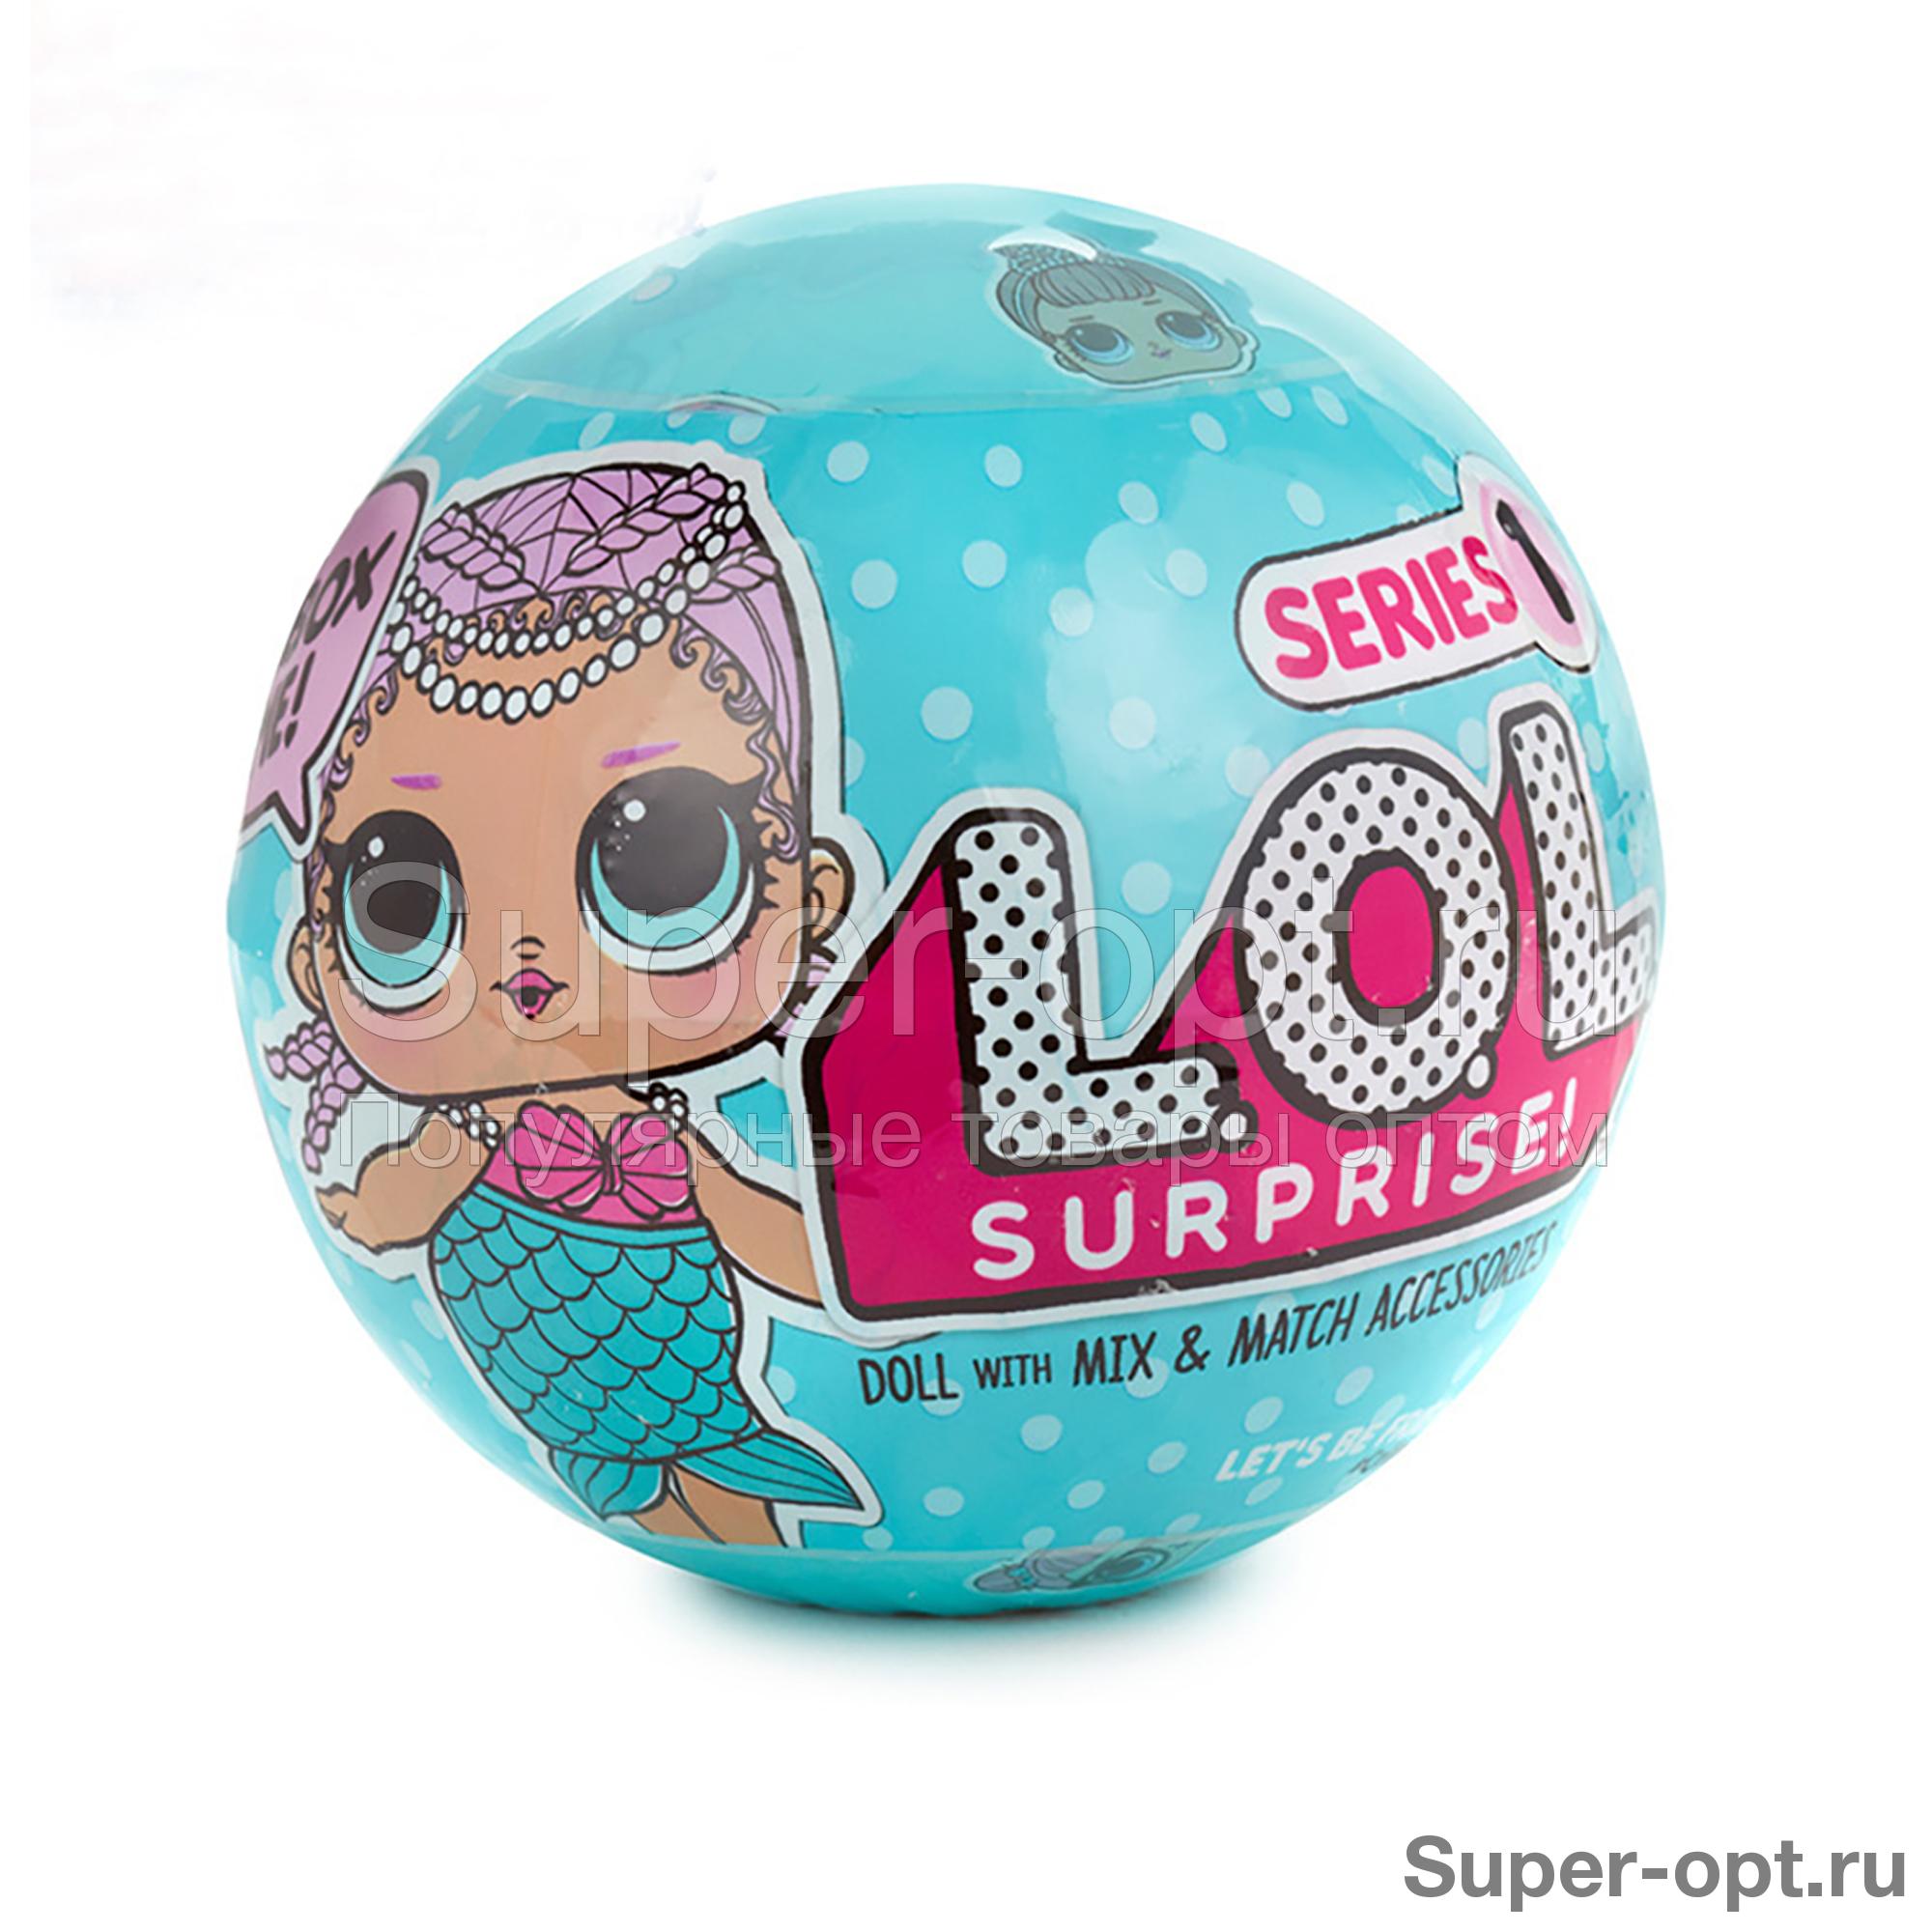 Кукла в шарике Surprise 1 series